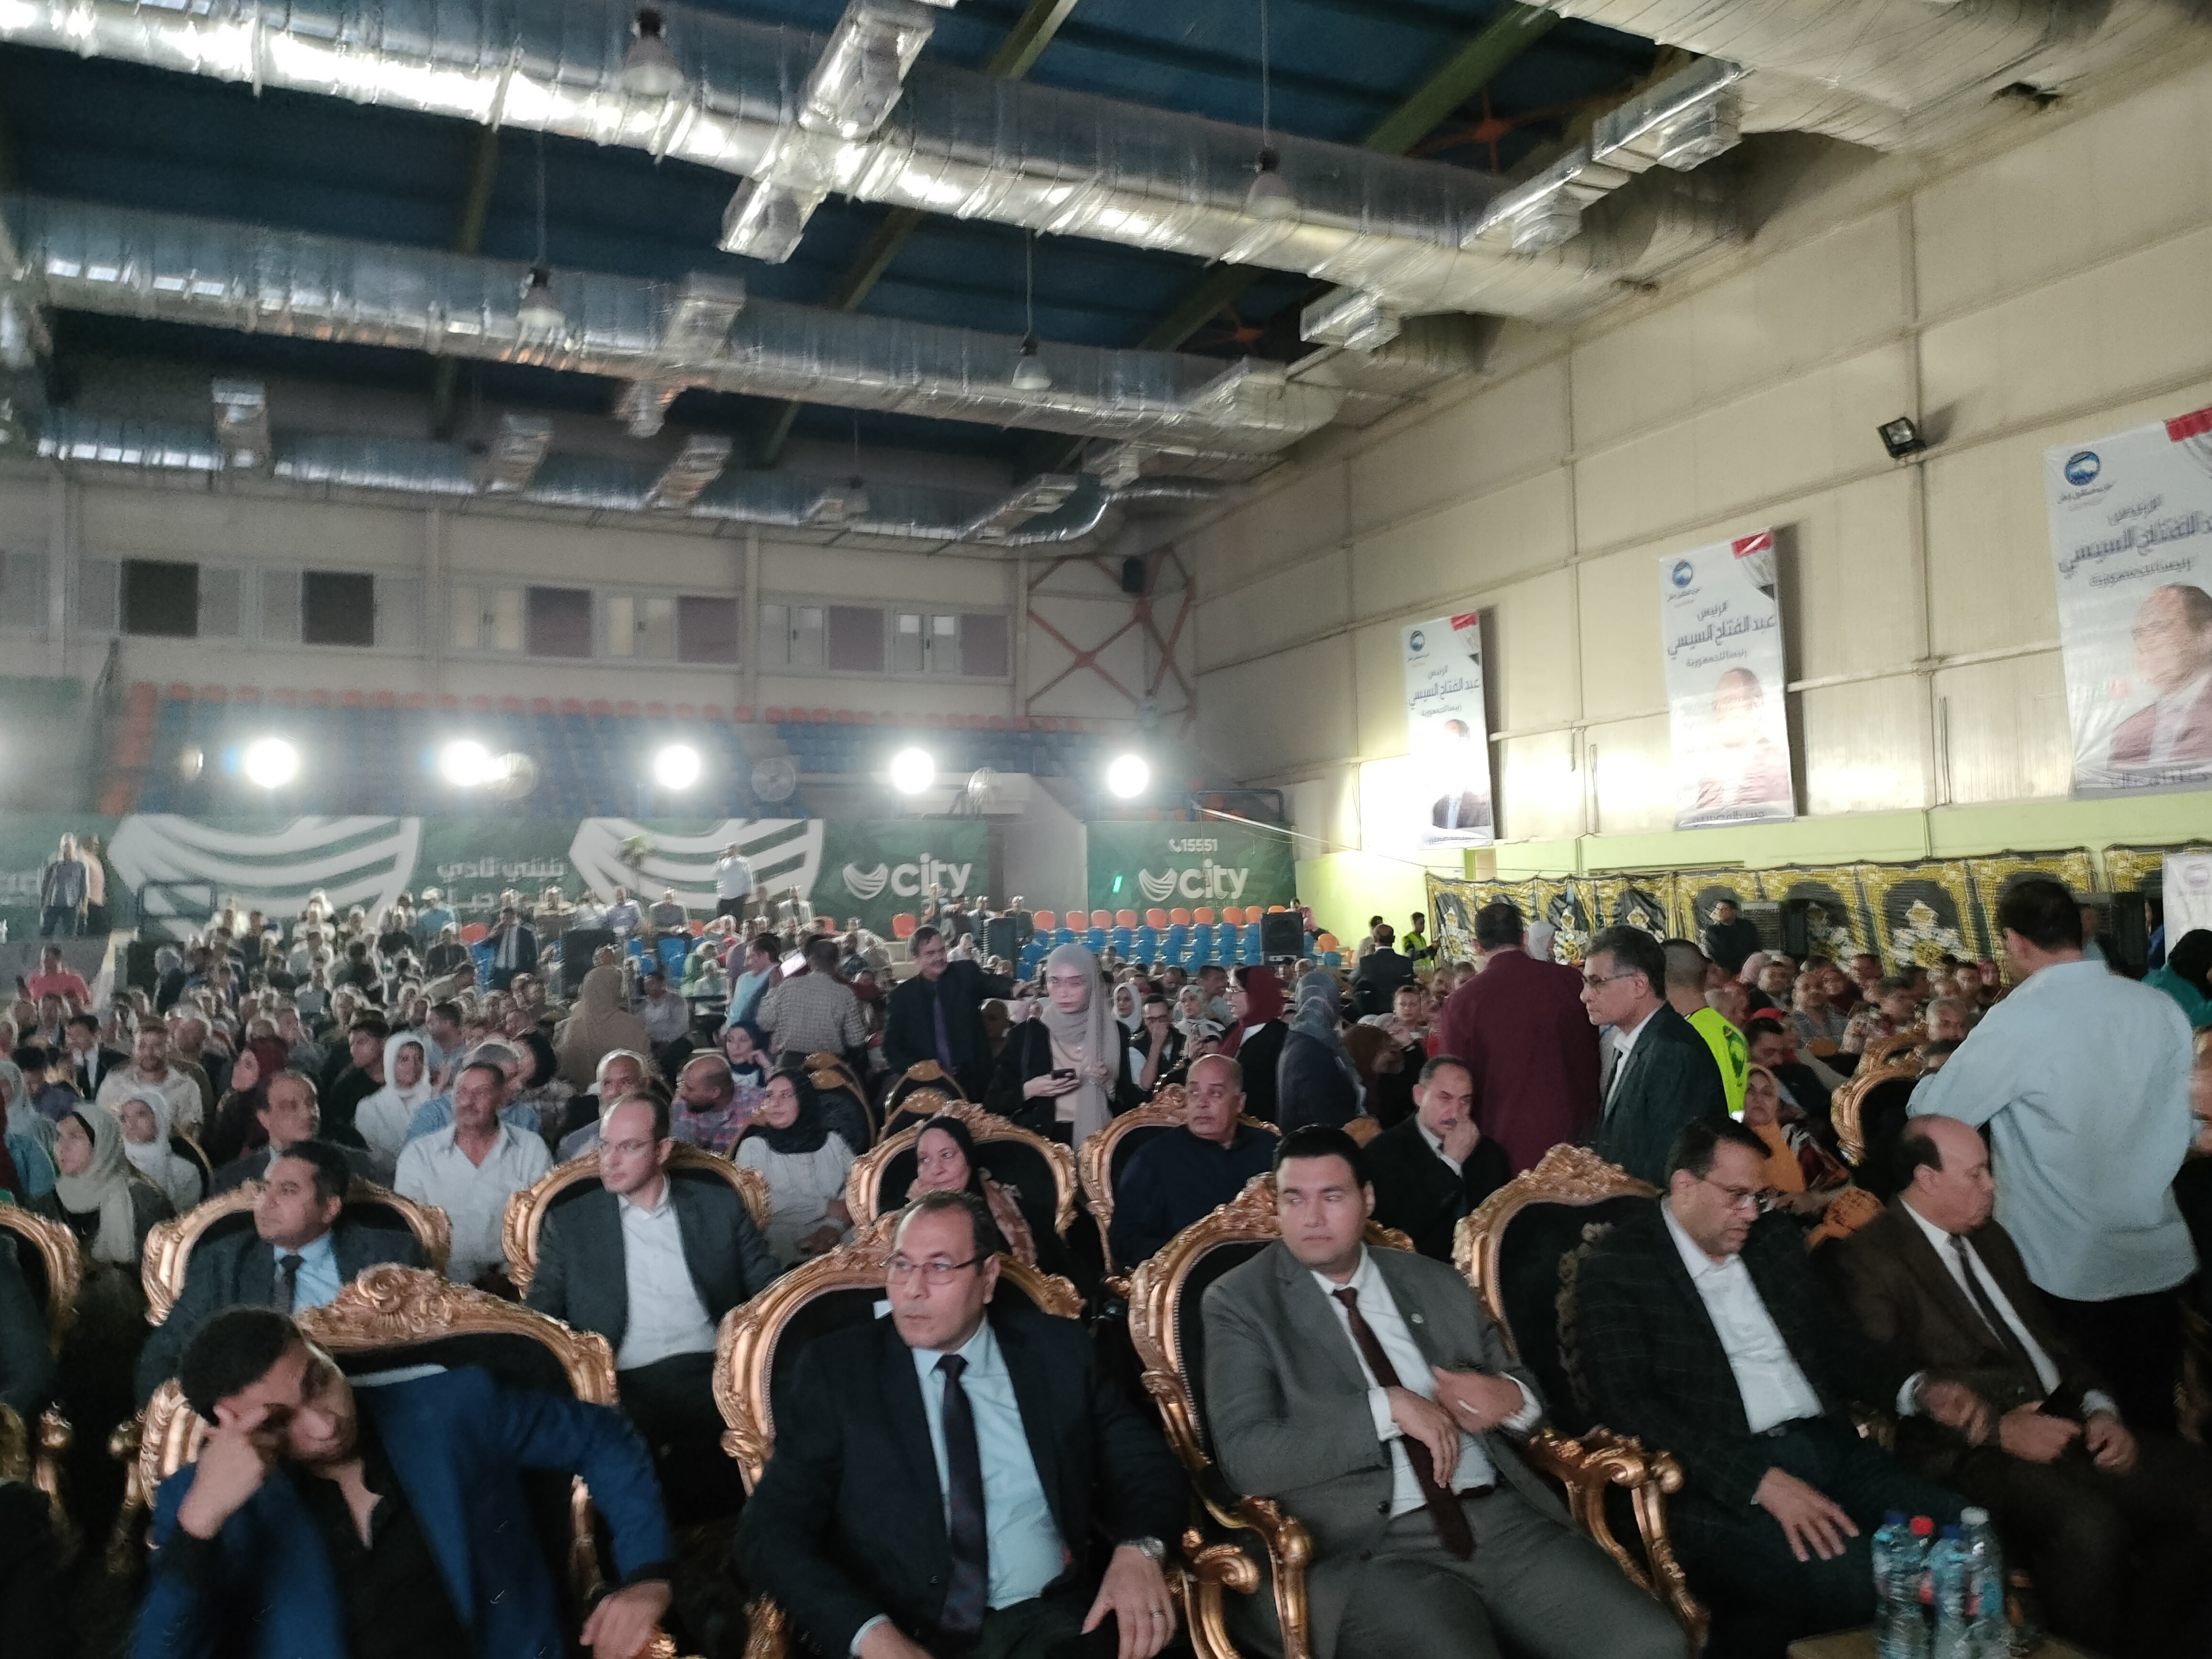 مؤتمر مستقبل وطن في محافظة الغربية (1)